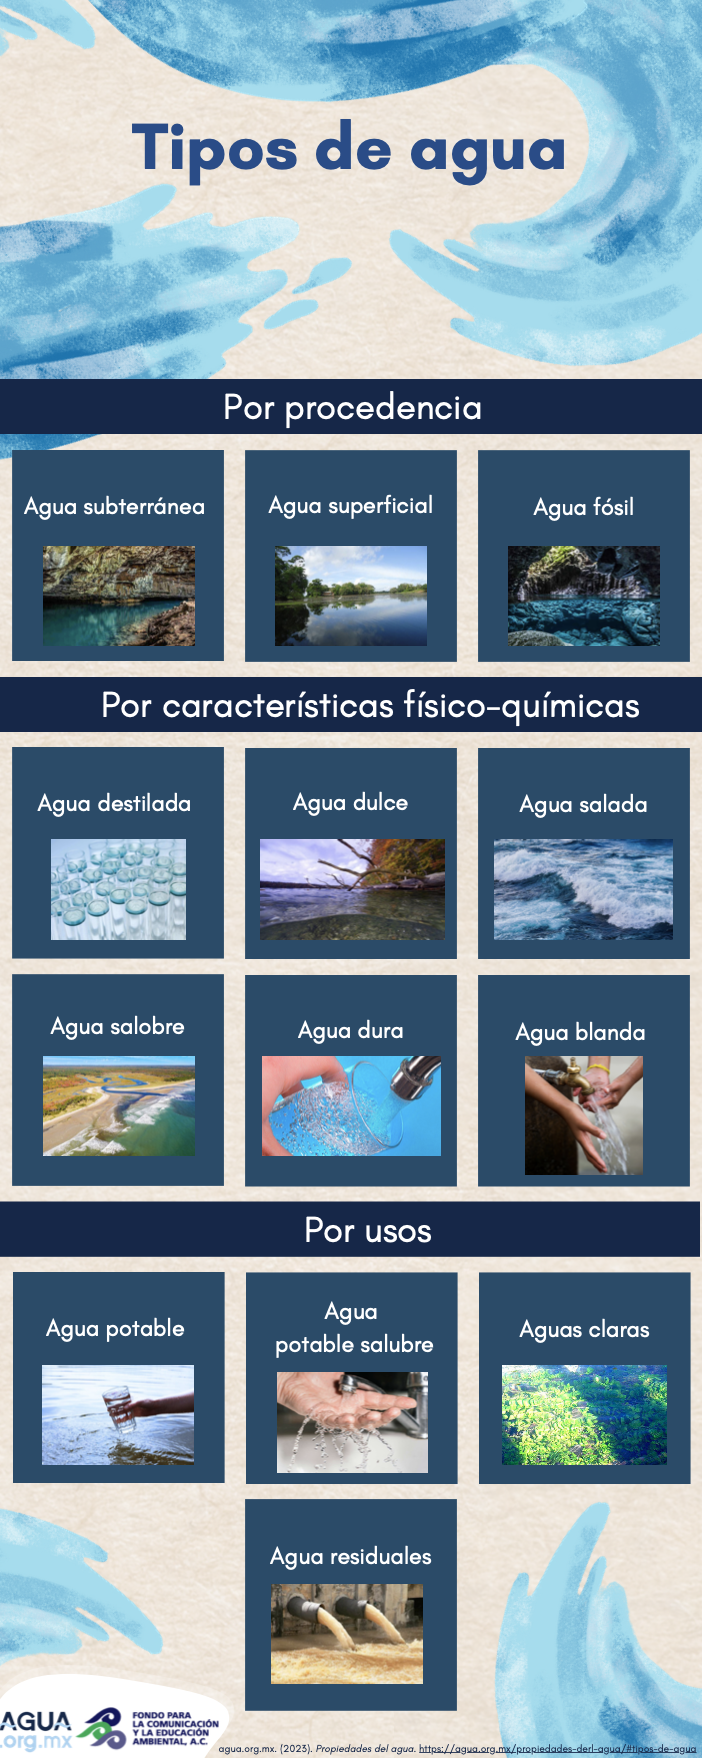 Infografía: Tipos de agua (agua.org.mx)